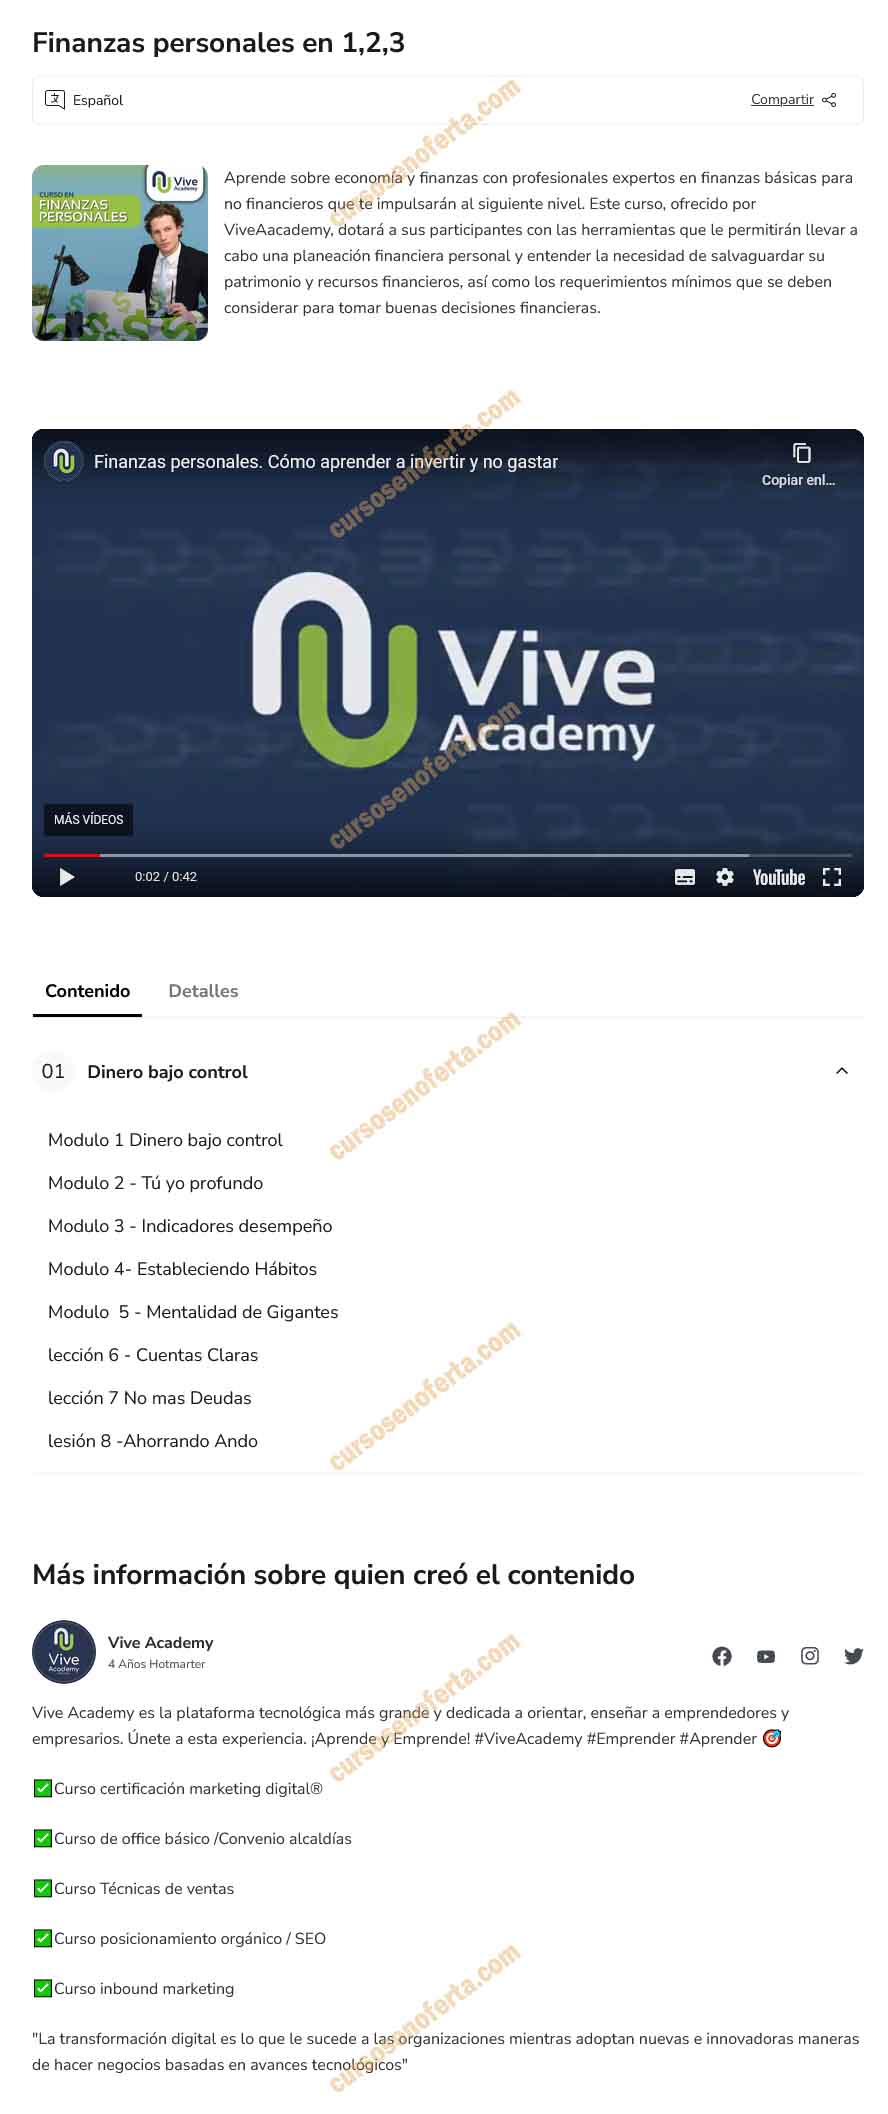 Finanzas Personales en 1,2,3 - Vive Academy